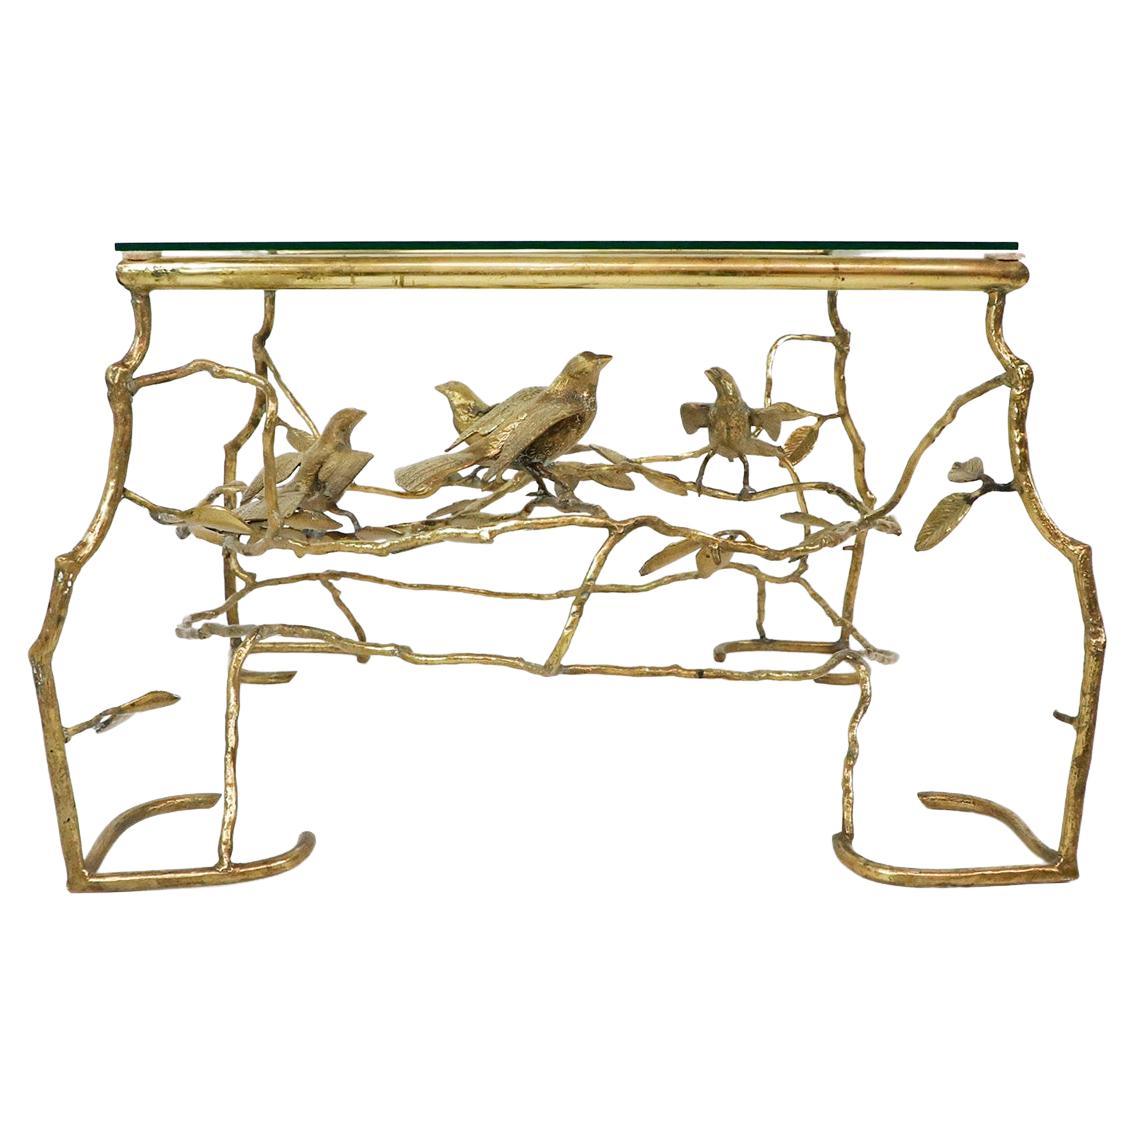 Table en forme de branches d'arbre et d'oiseaux dans le style de Giacometti, fabriquée à la main en laiton